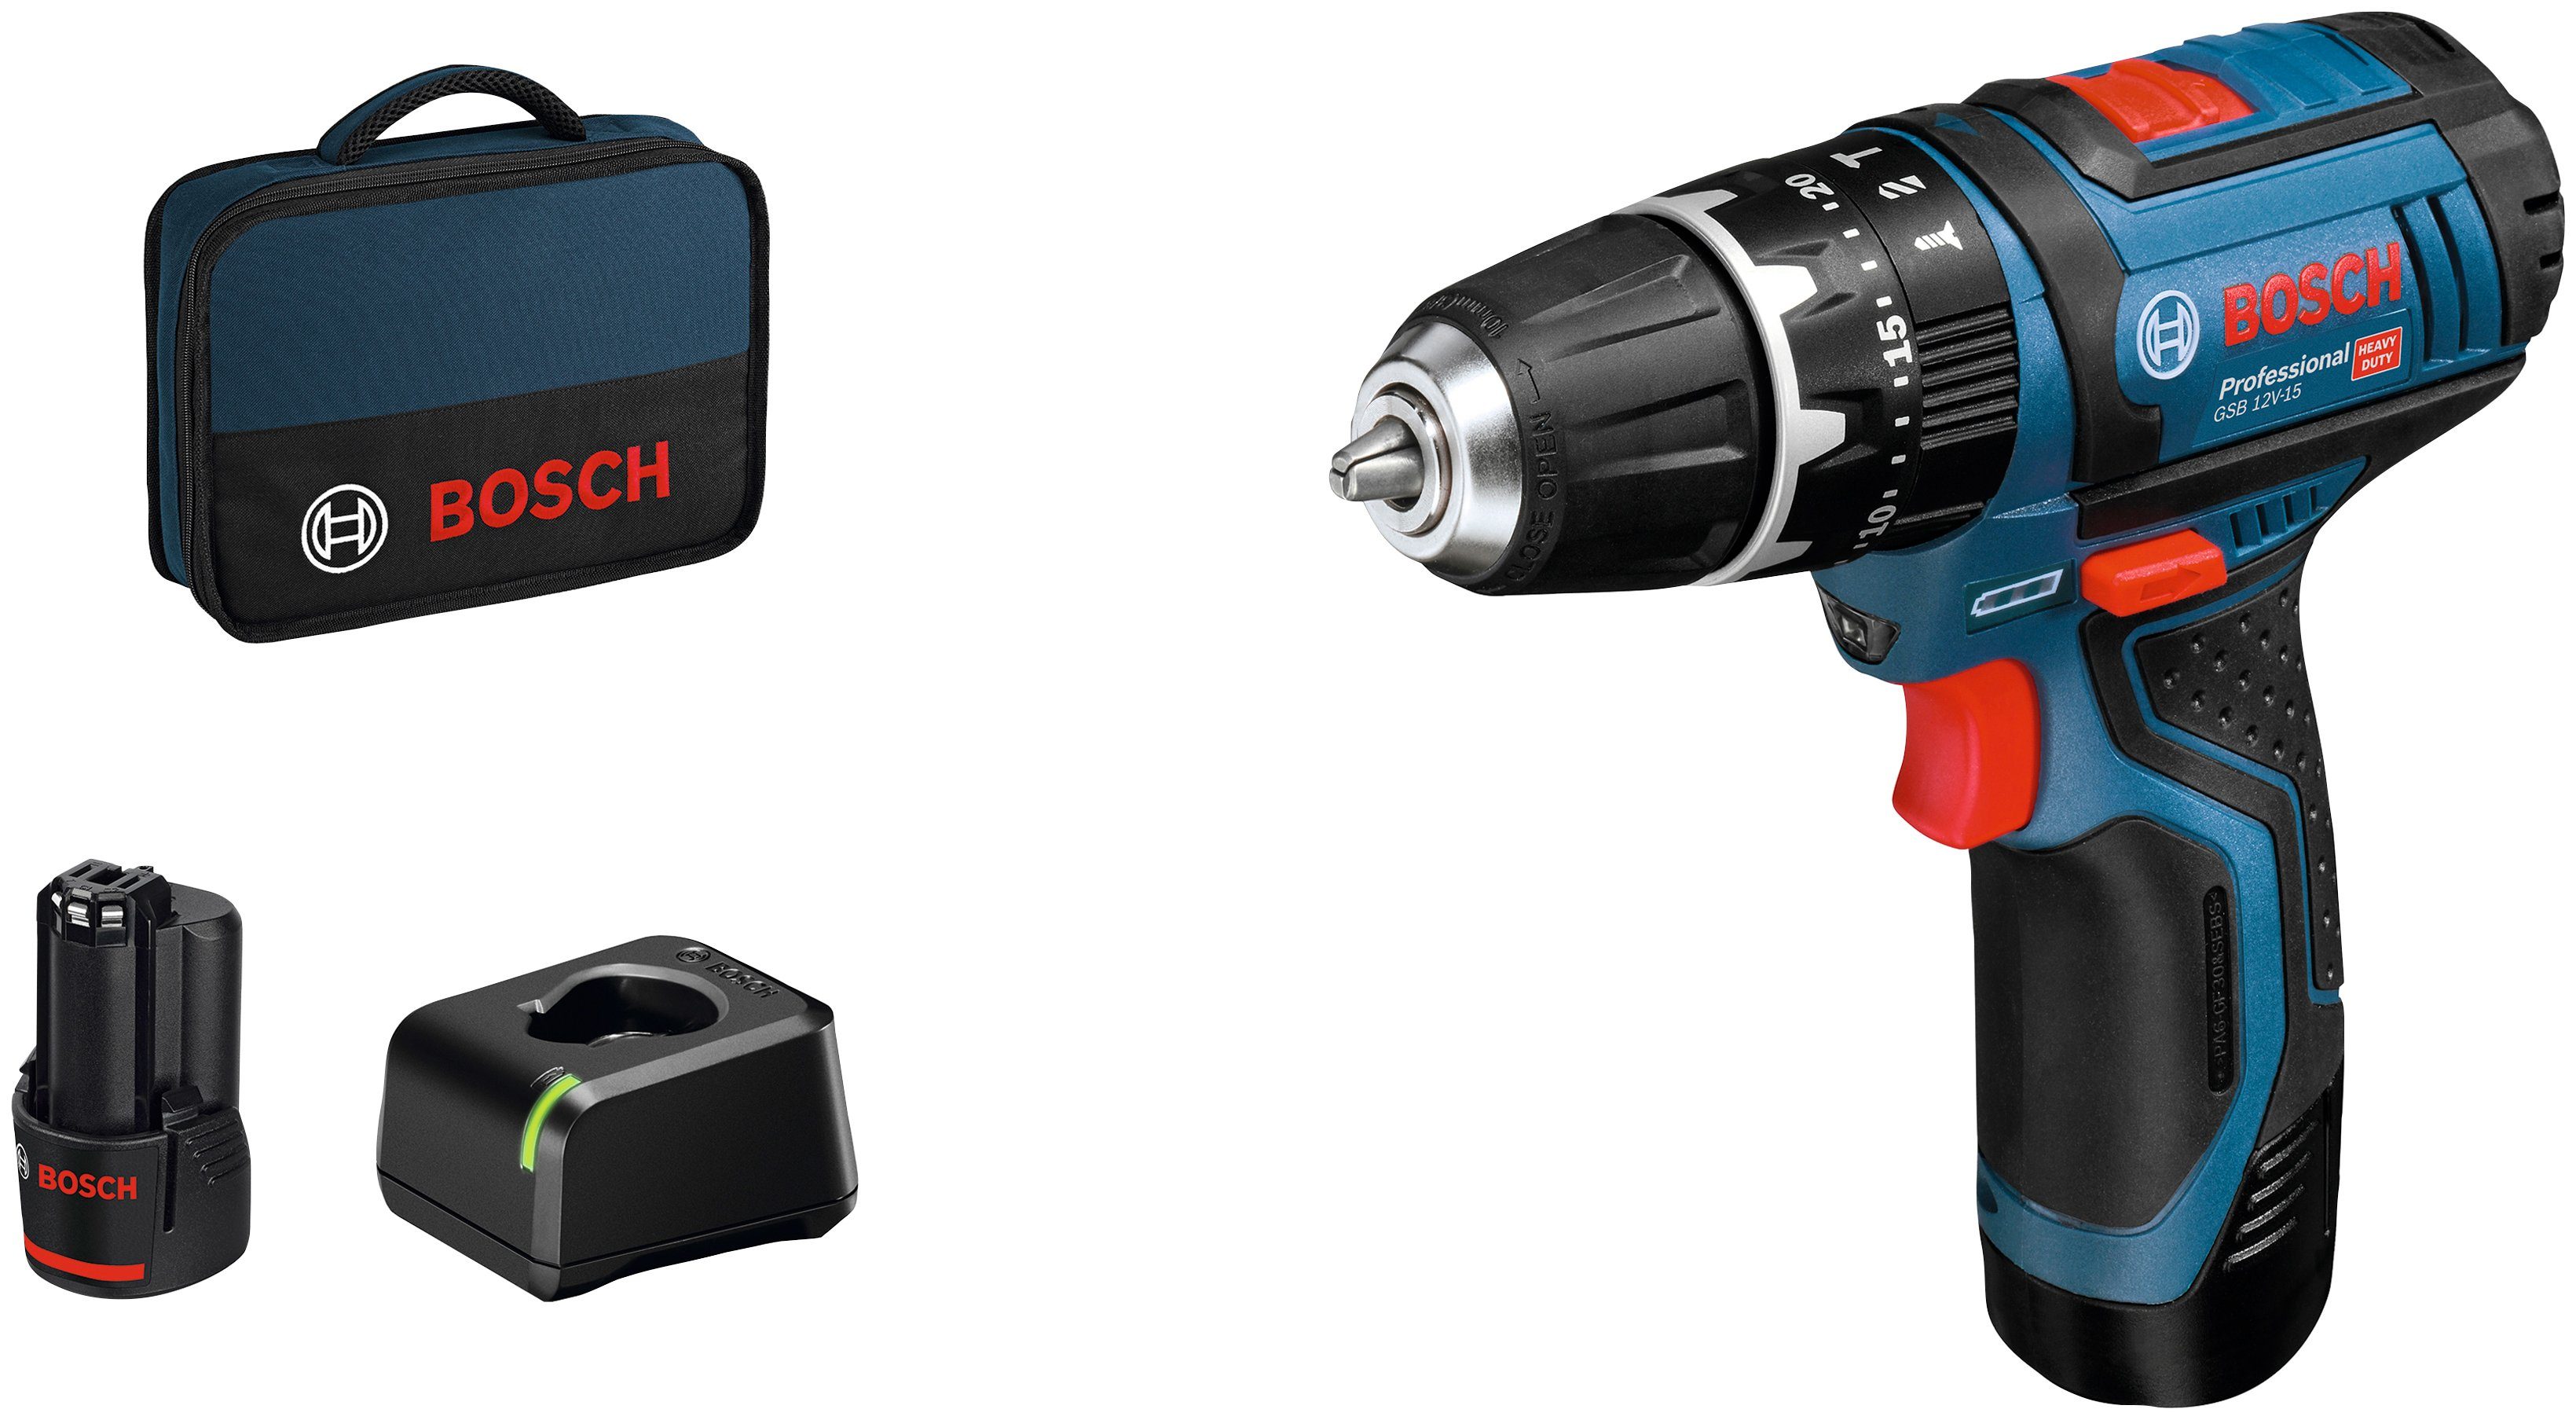 Akkus LED-Arbeitslicht und 12V-15, GSB 2 Praktisches Batterie-Ladezustandsanzeige Ladegerät, und Professional Akku-Schlagbohrschrauber inkl. Bosch (Set),